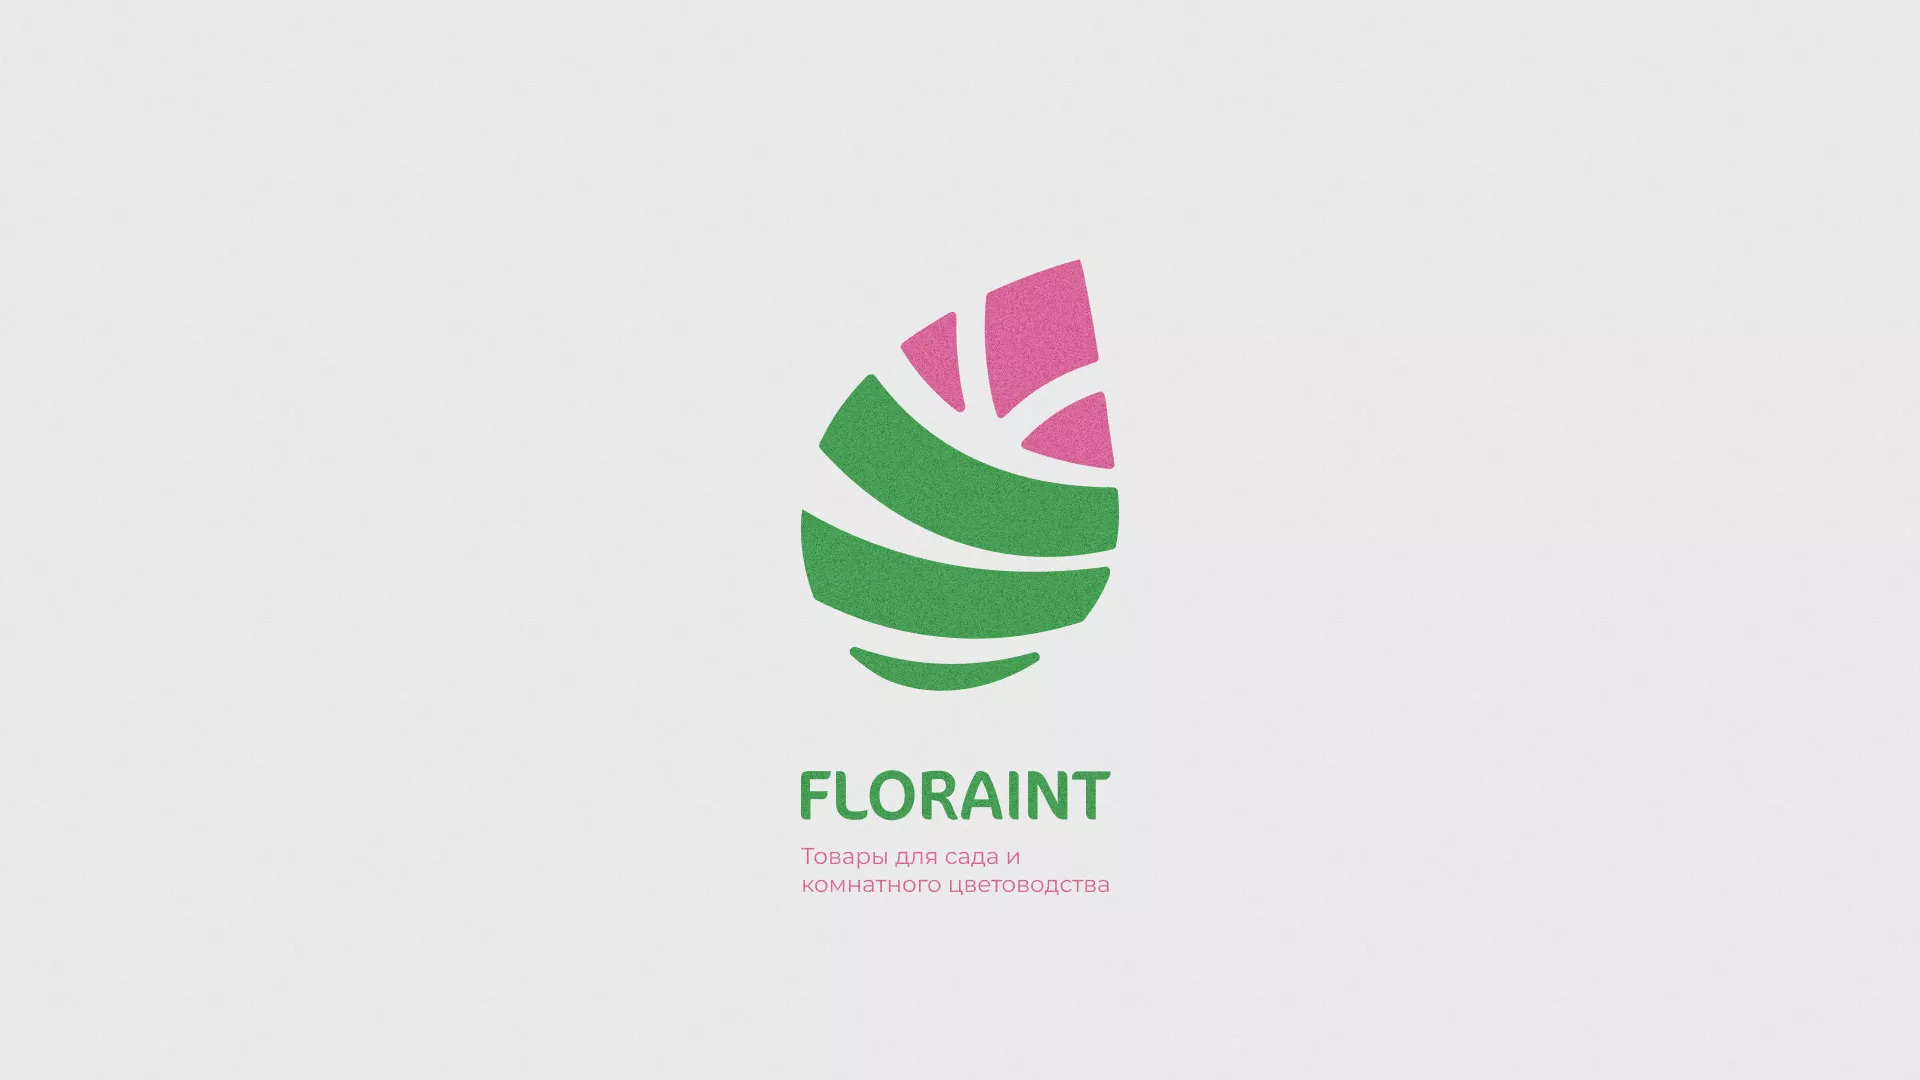 Разработка оформления профиля Instagram для магазина «Floraint» в Емве